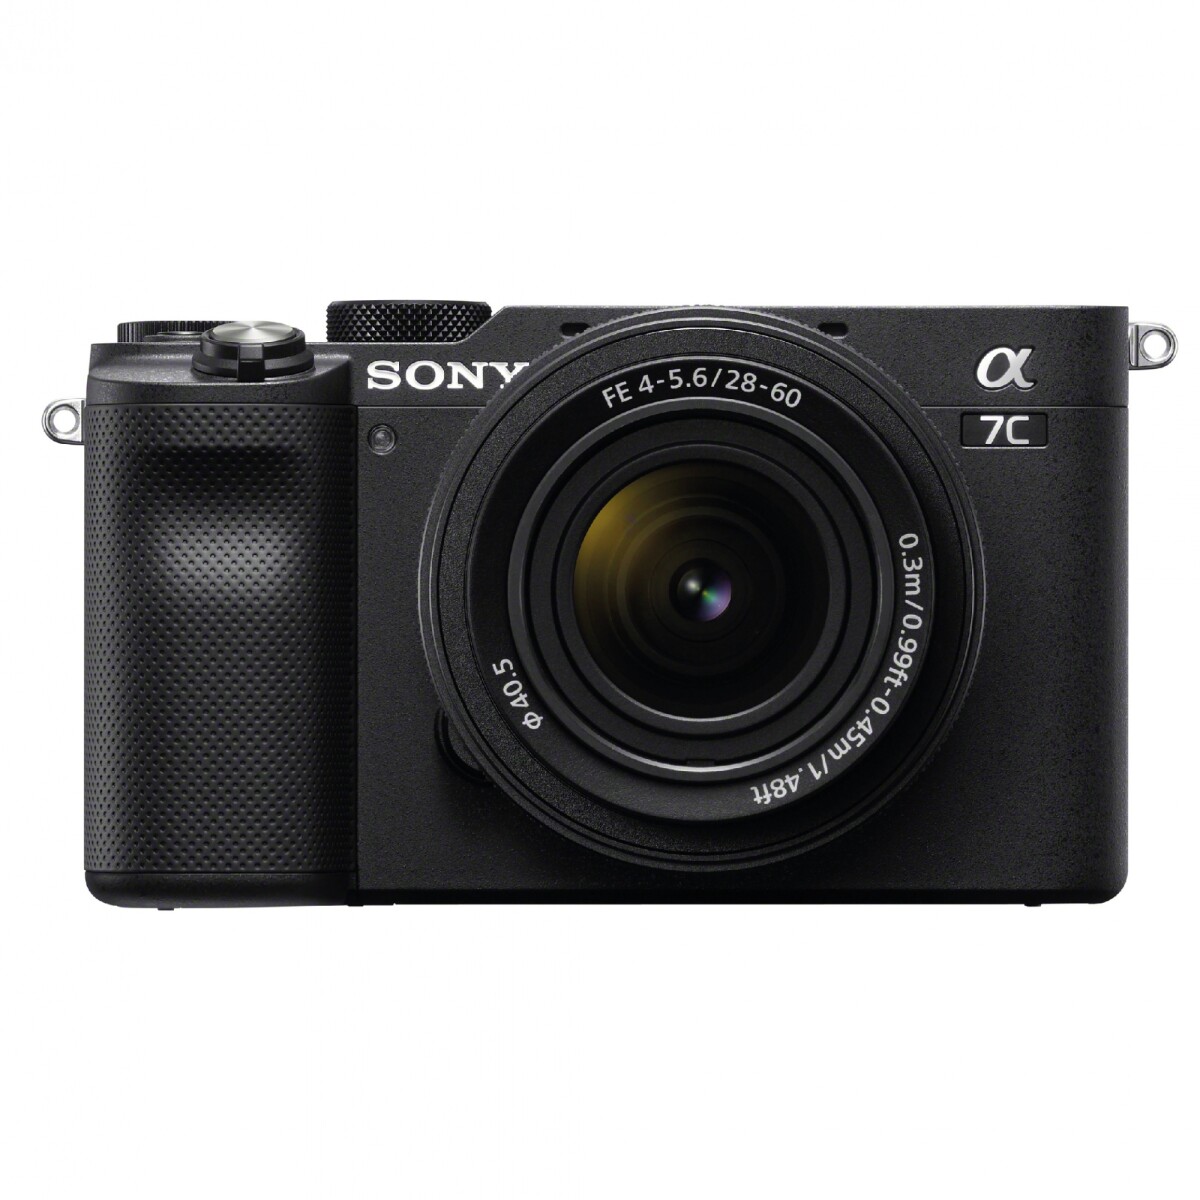 cámara compacta sony full-frame alpha 7c + lente fe 28-60mm f4/5.6 - ilce-7cl 